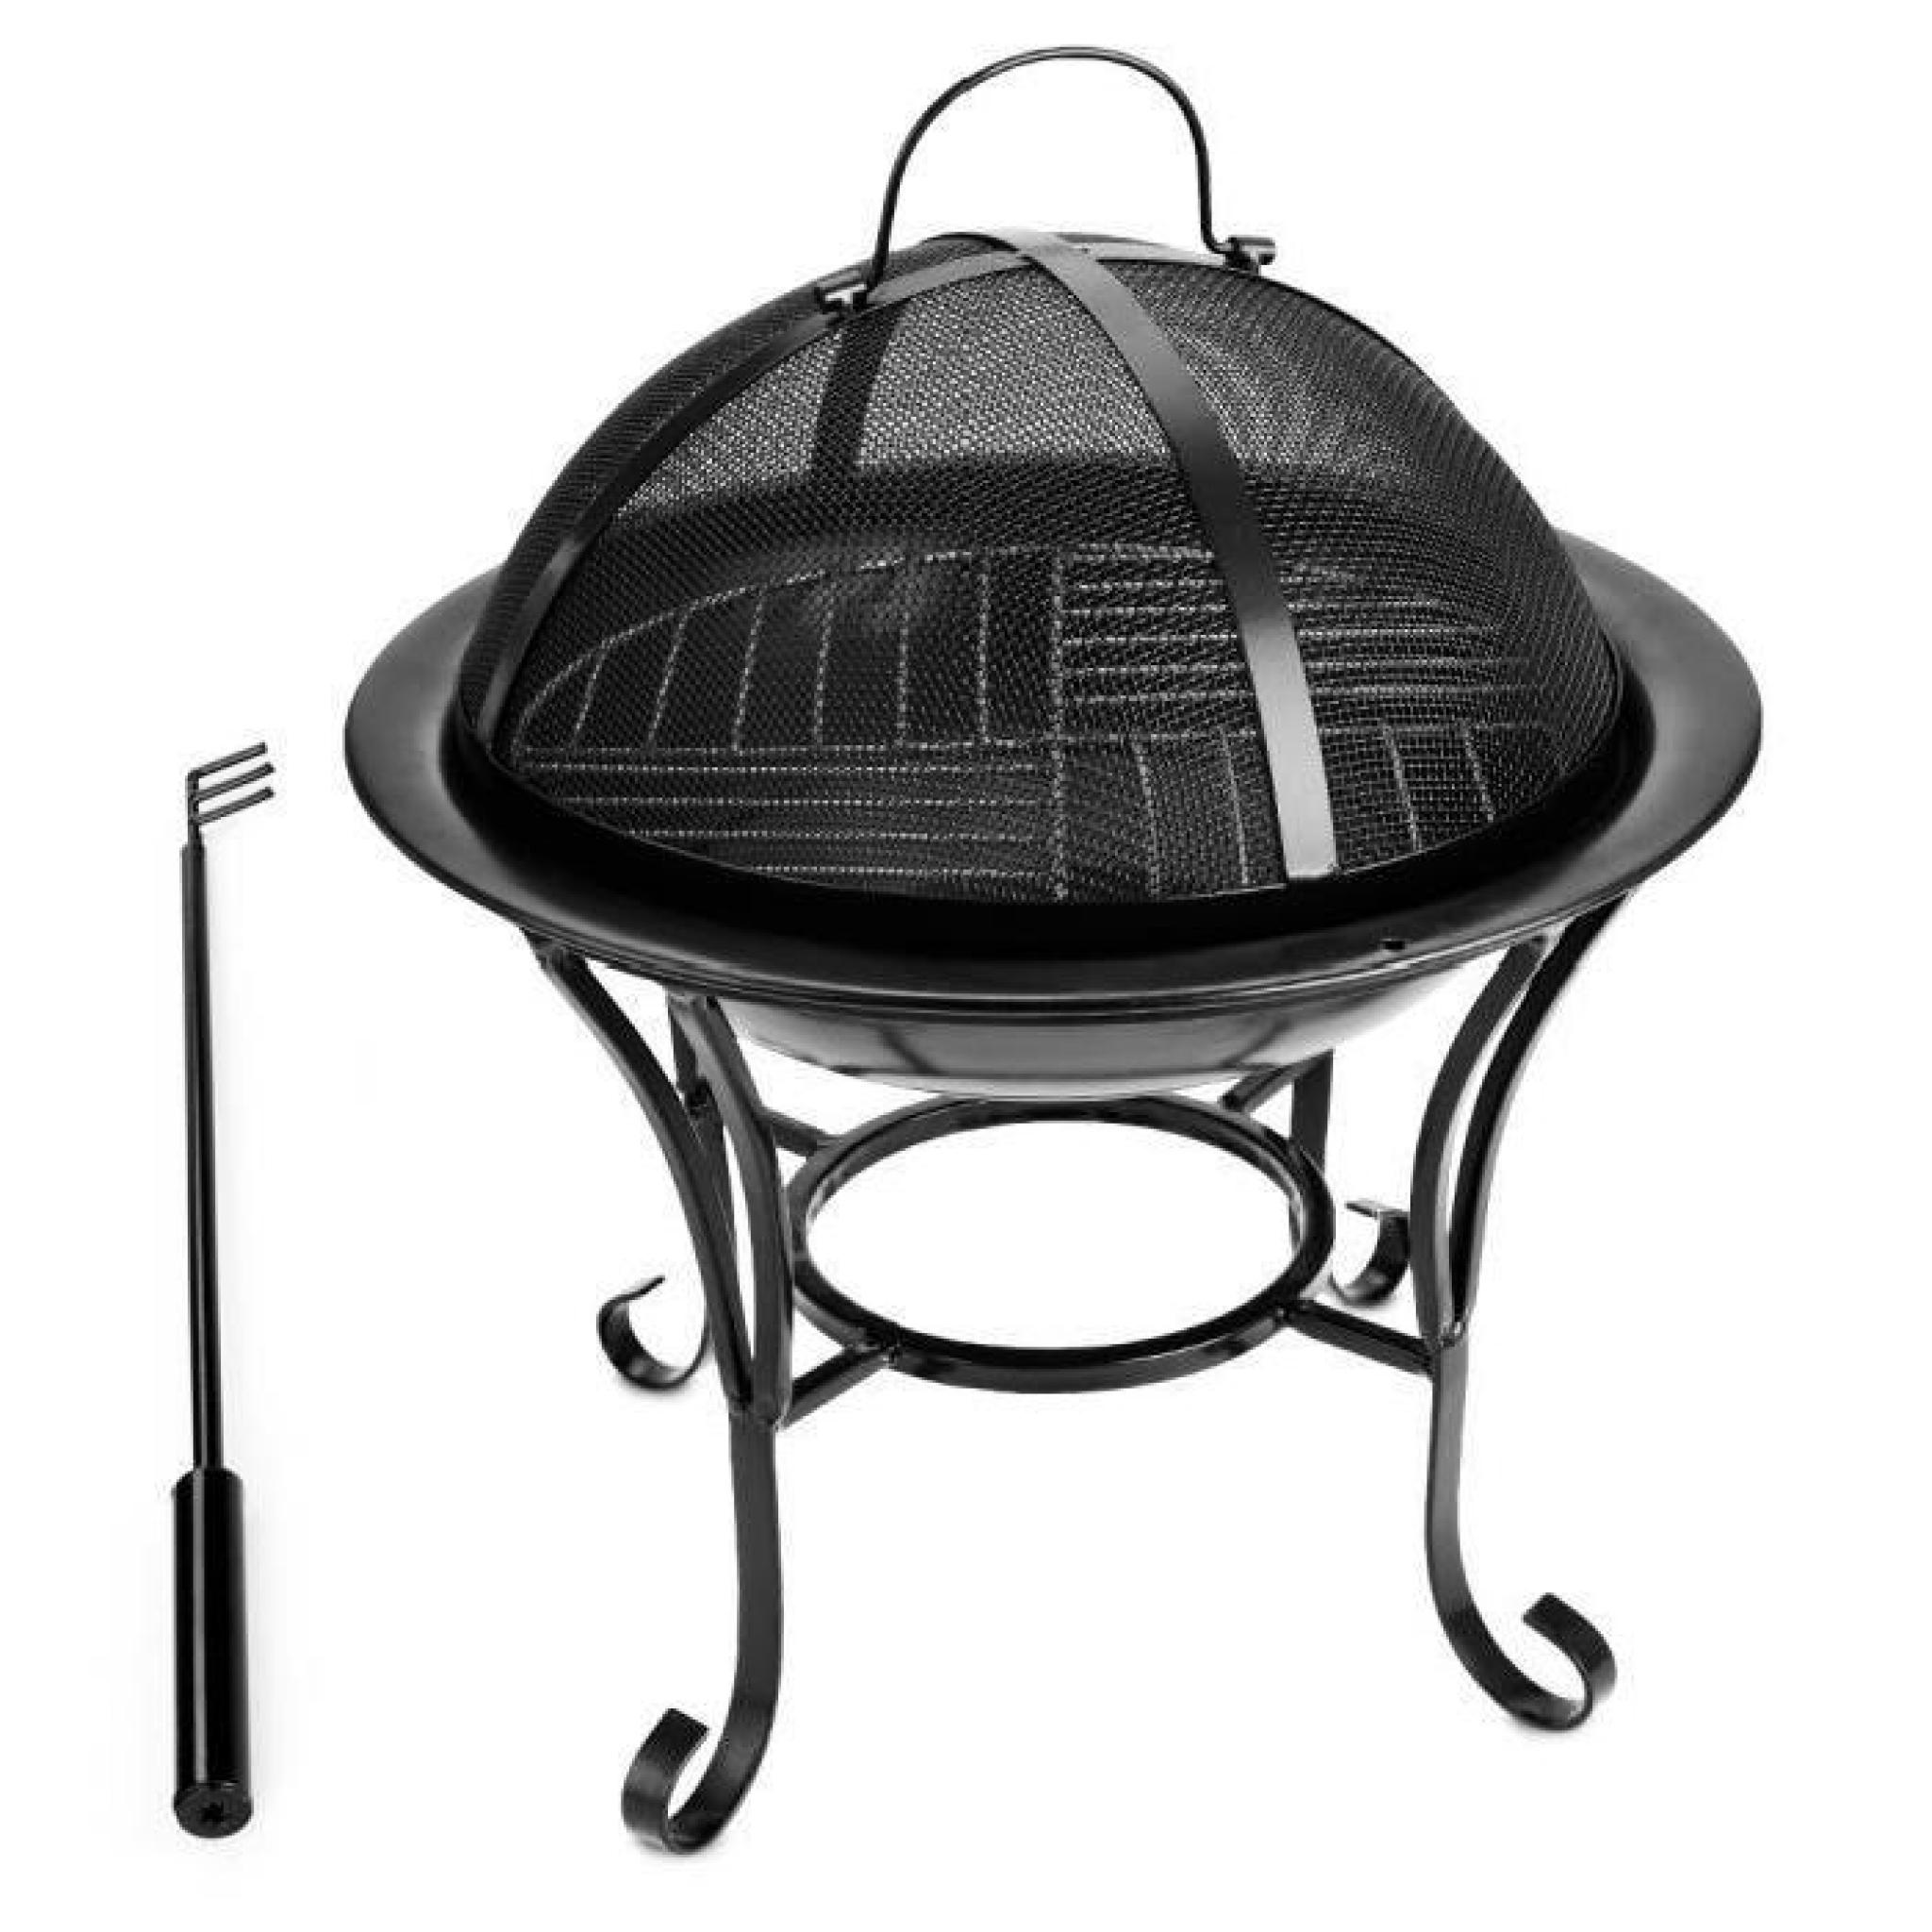 grillé Barbecue chauffage gaz charbon Set poêle Grill + couvercle + poignée